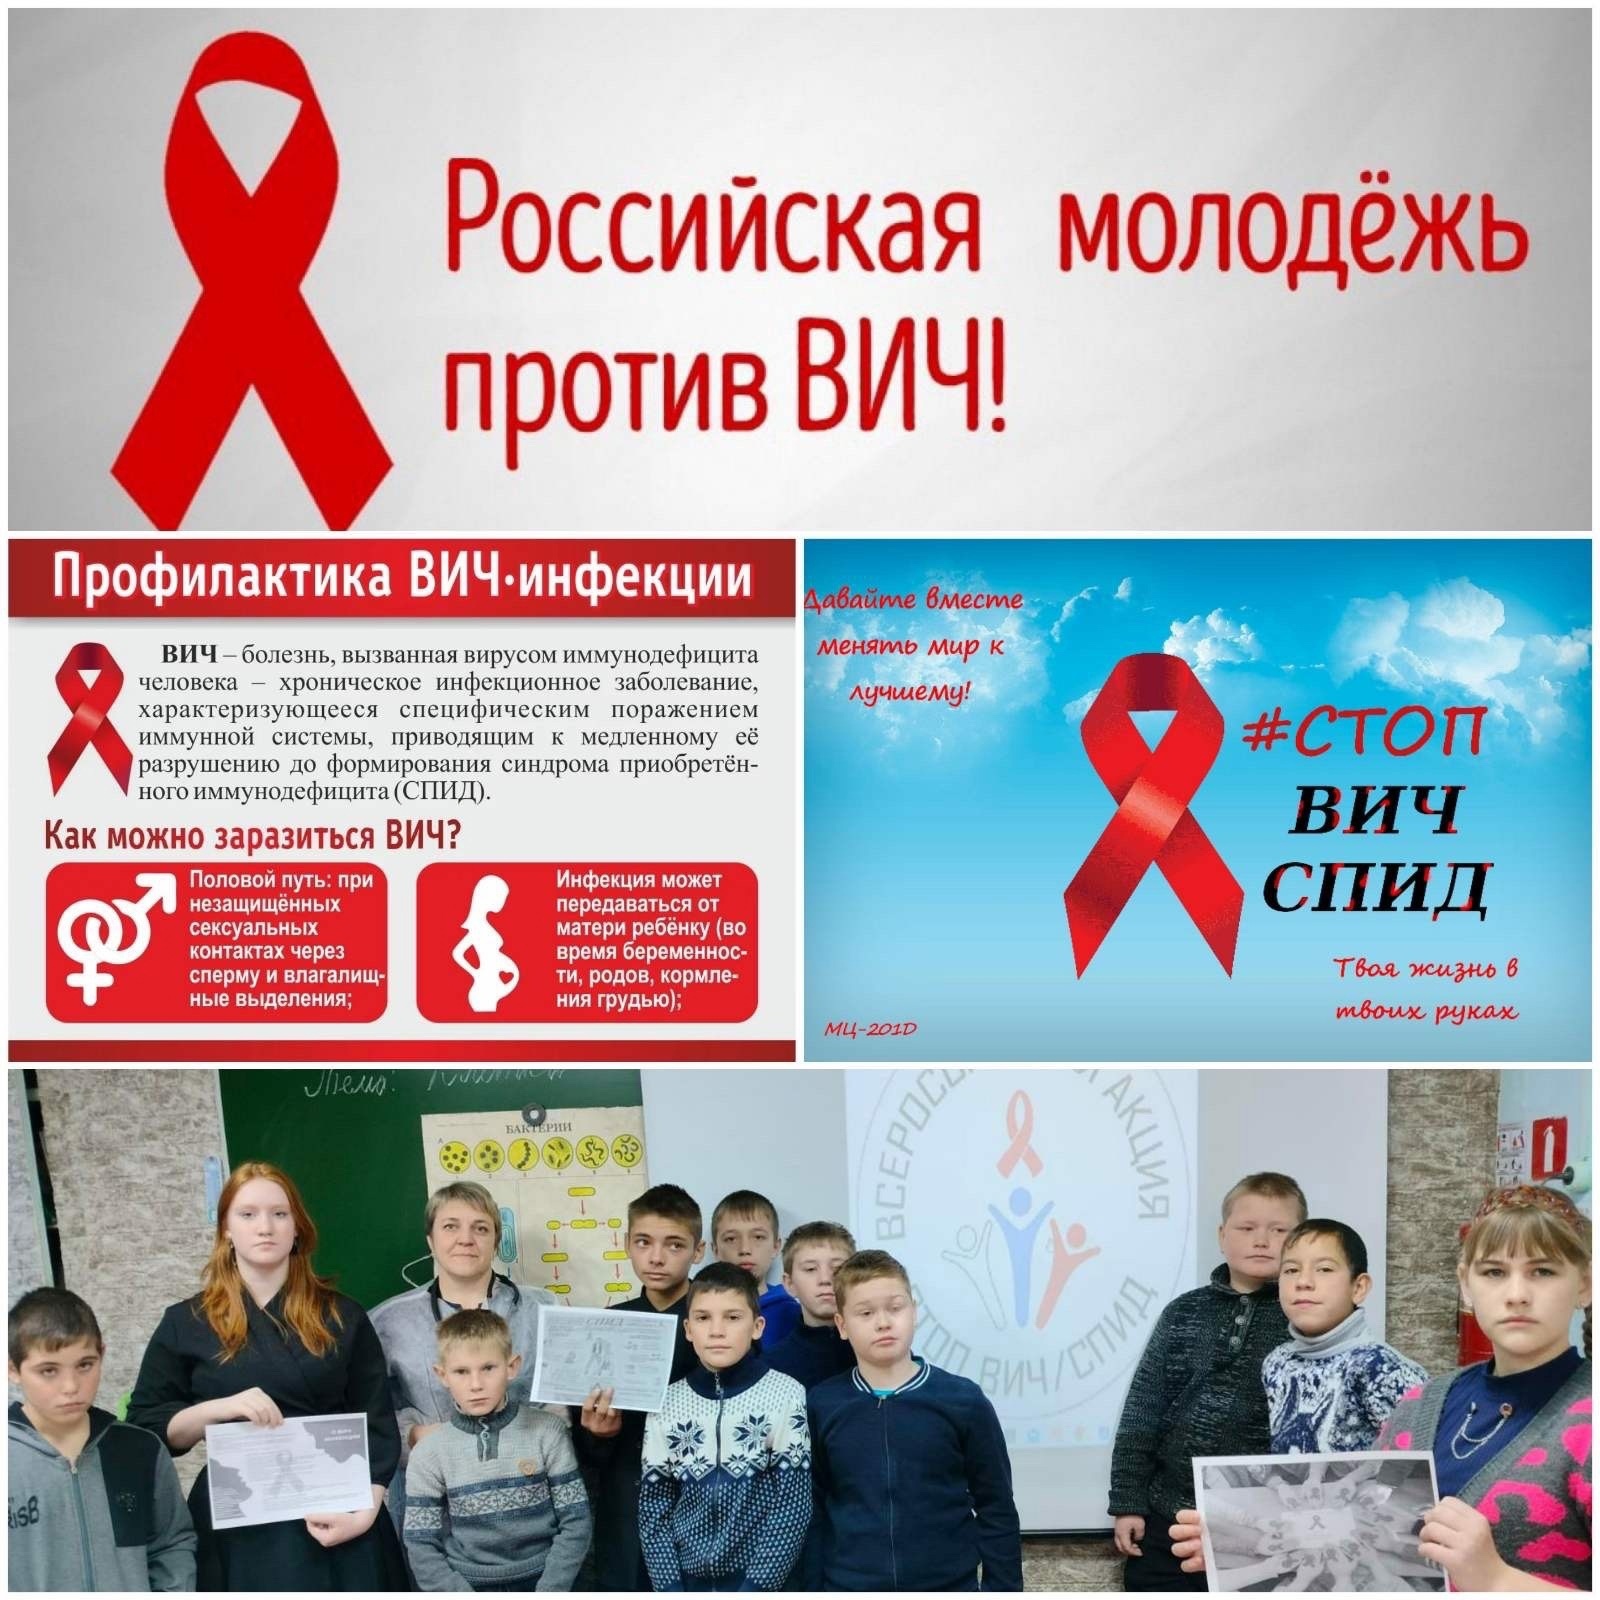 Всемирный День борьбы со СПИДом.